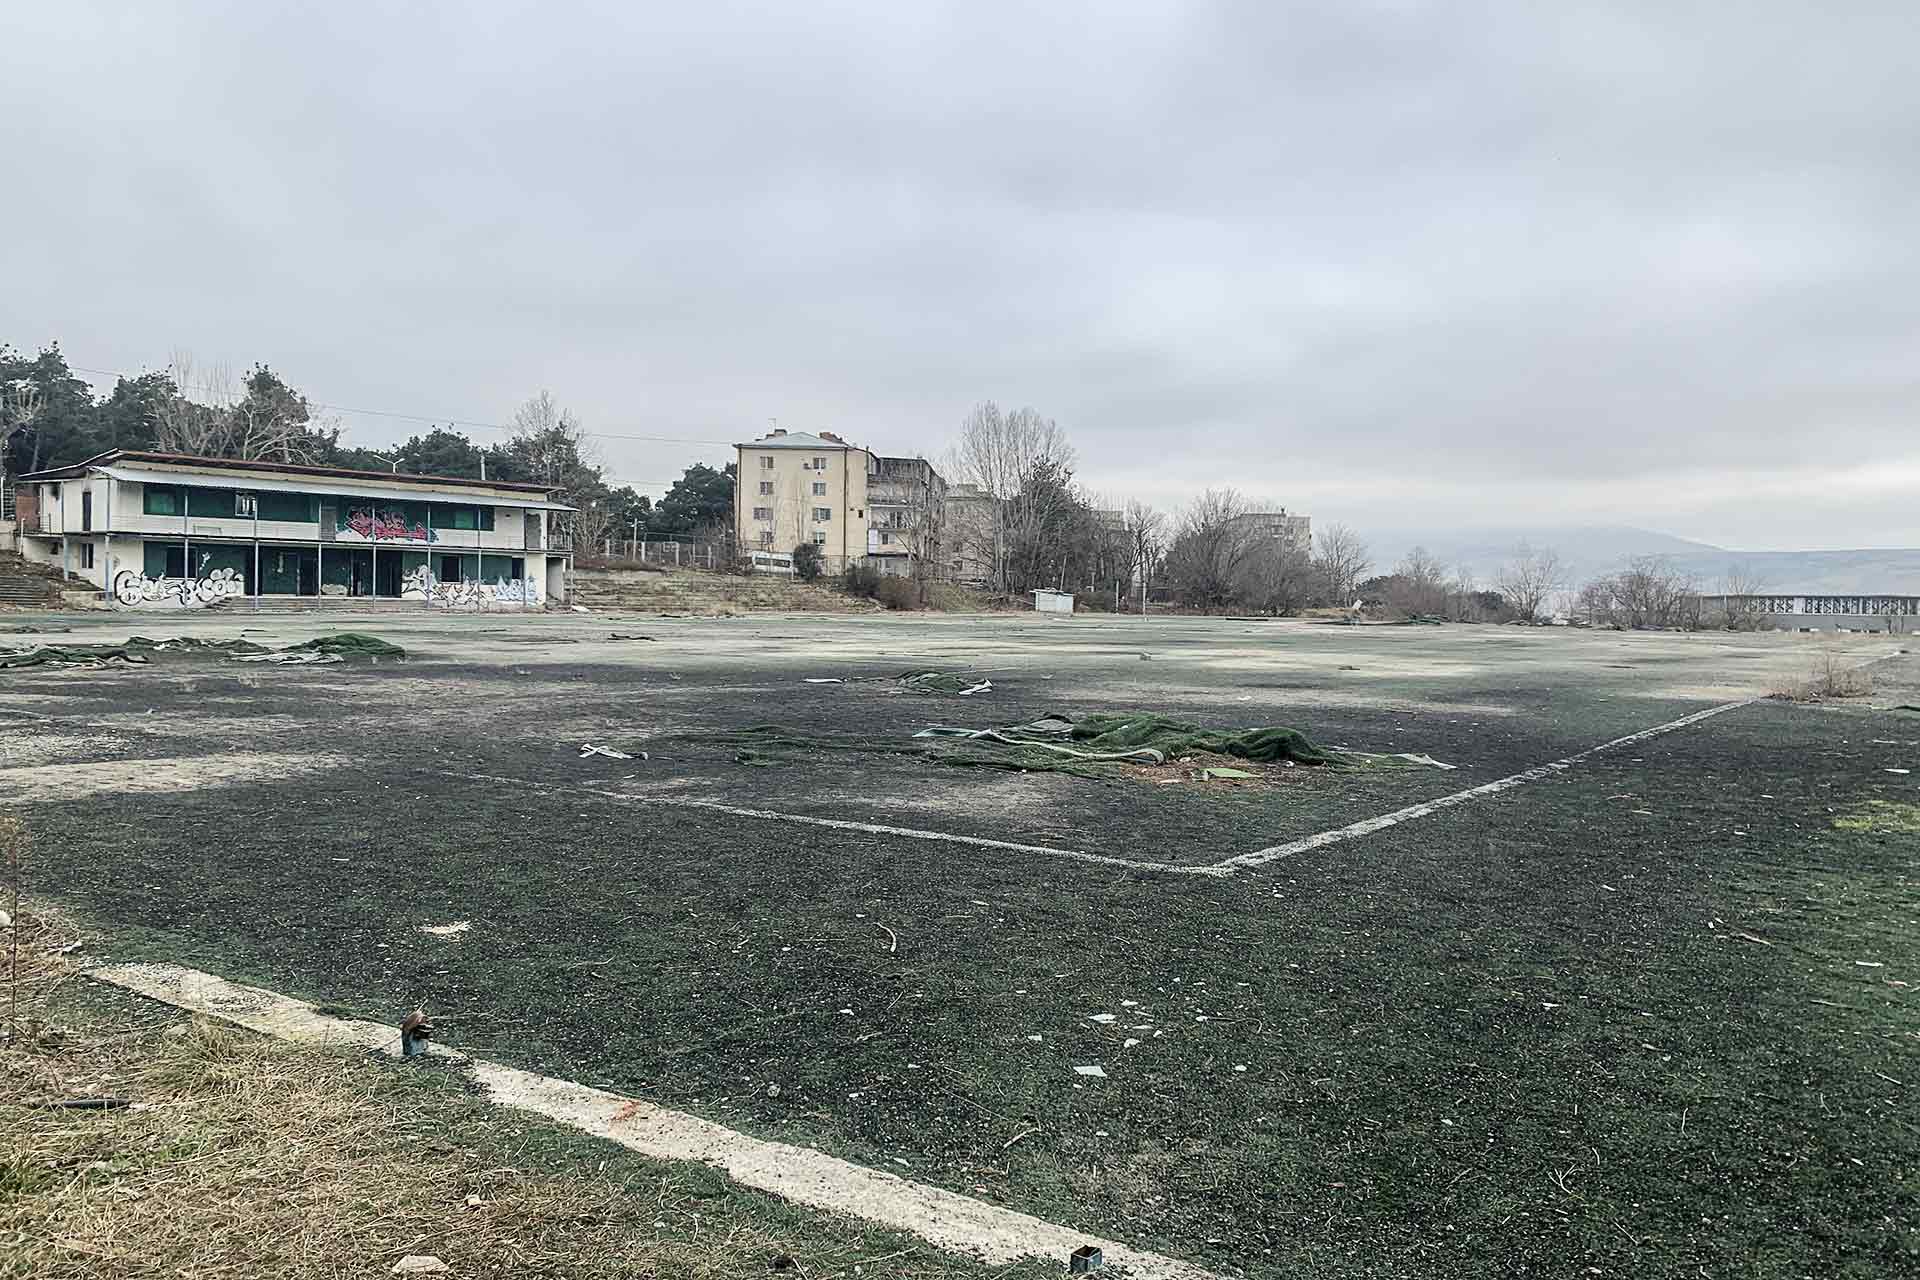 A field at Sport Club Duchi